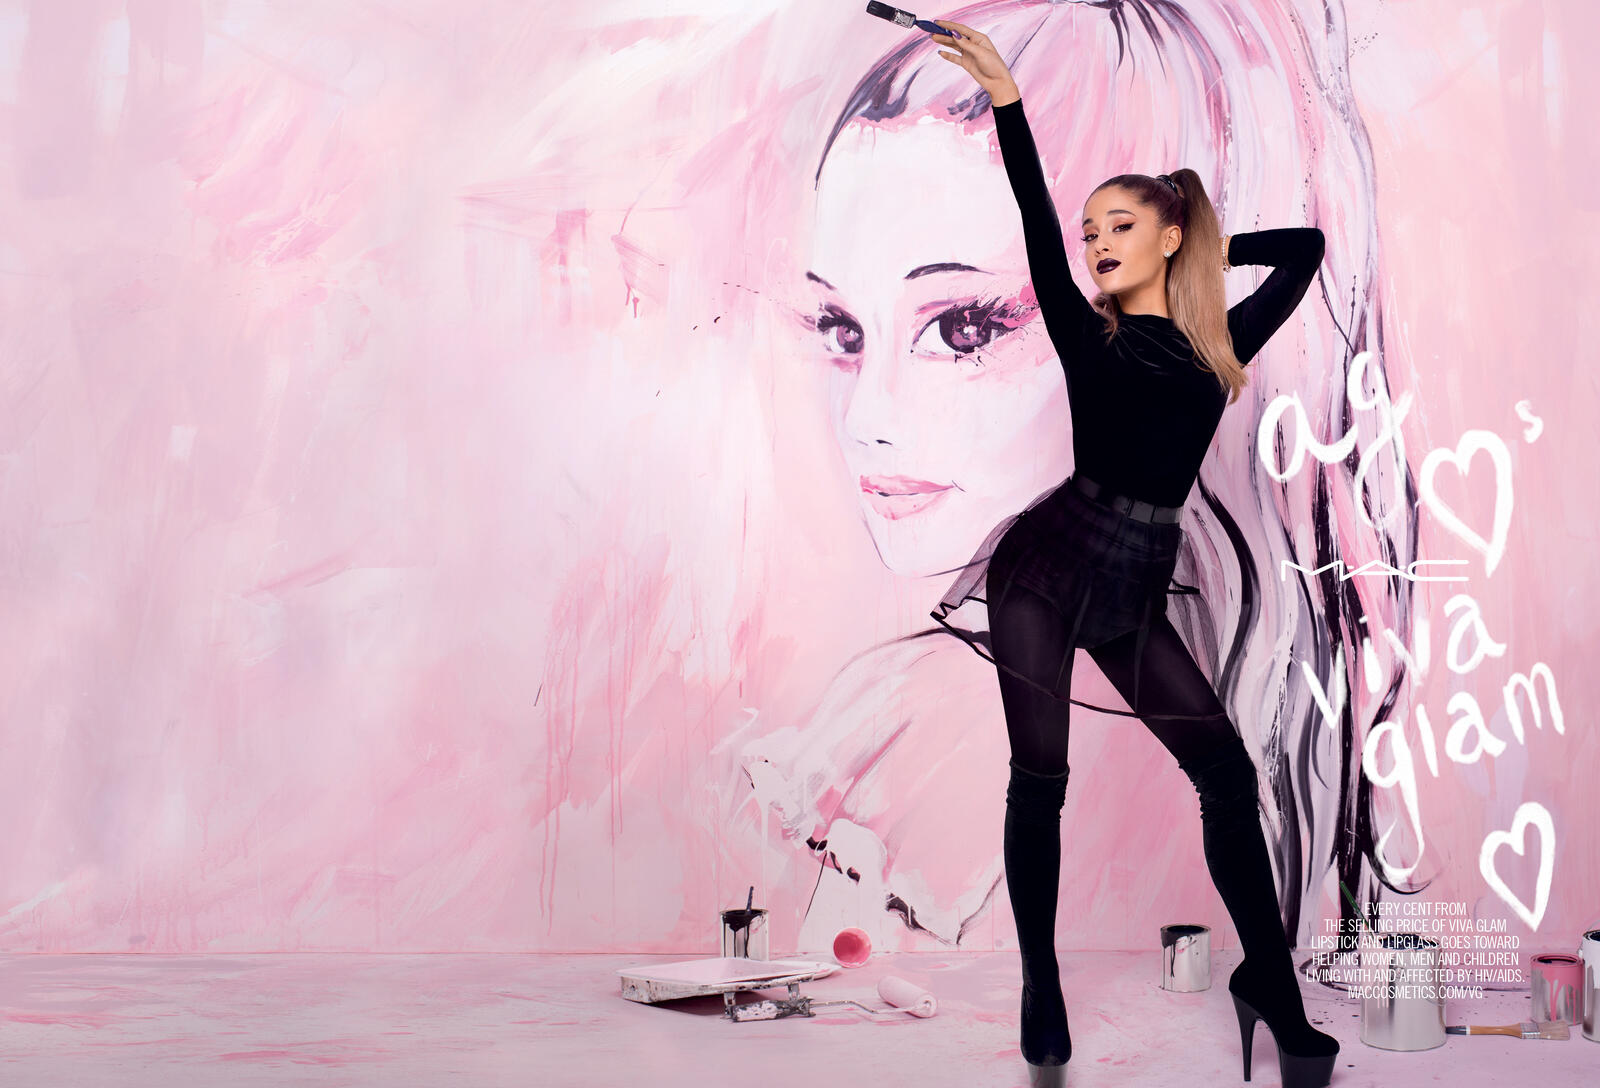 Wallpapers girls Ariana Grande celebrities on the desktop